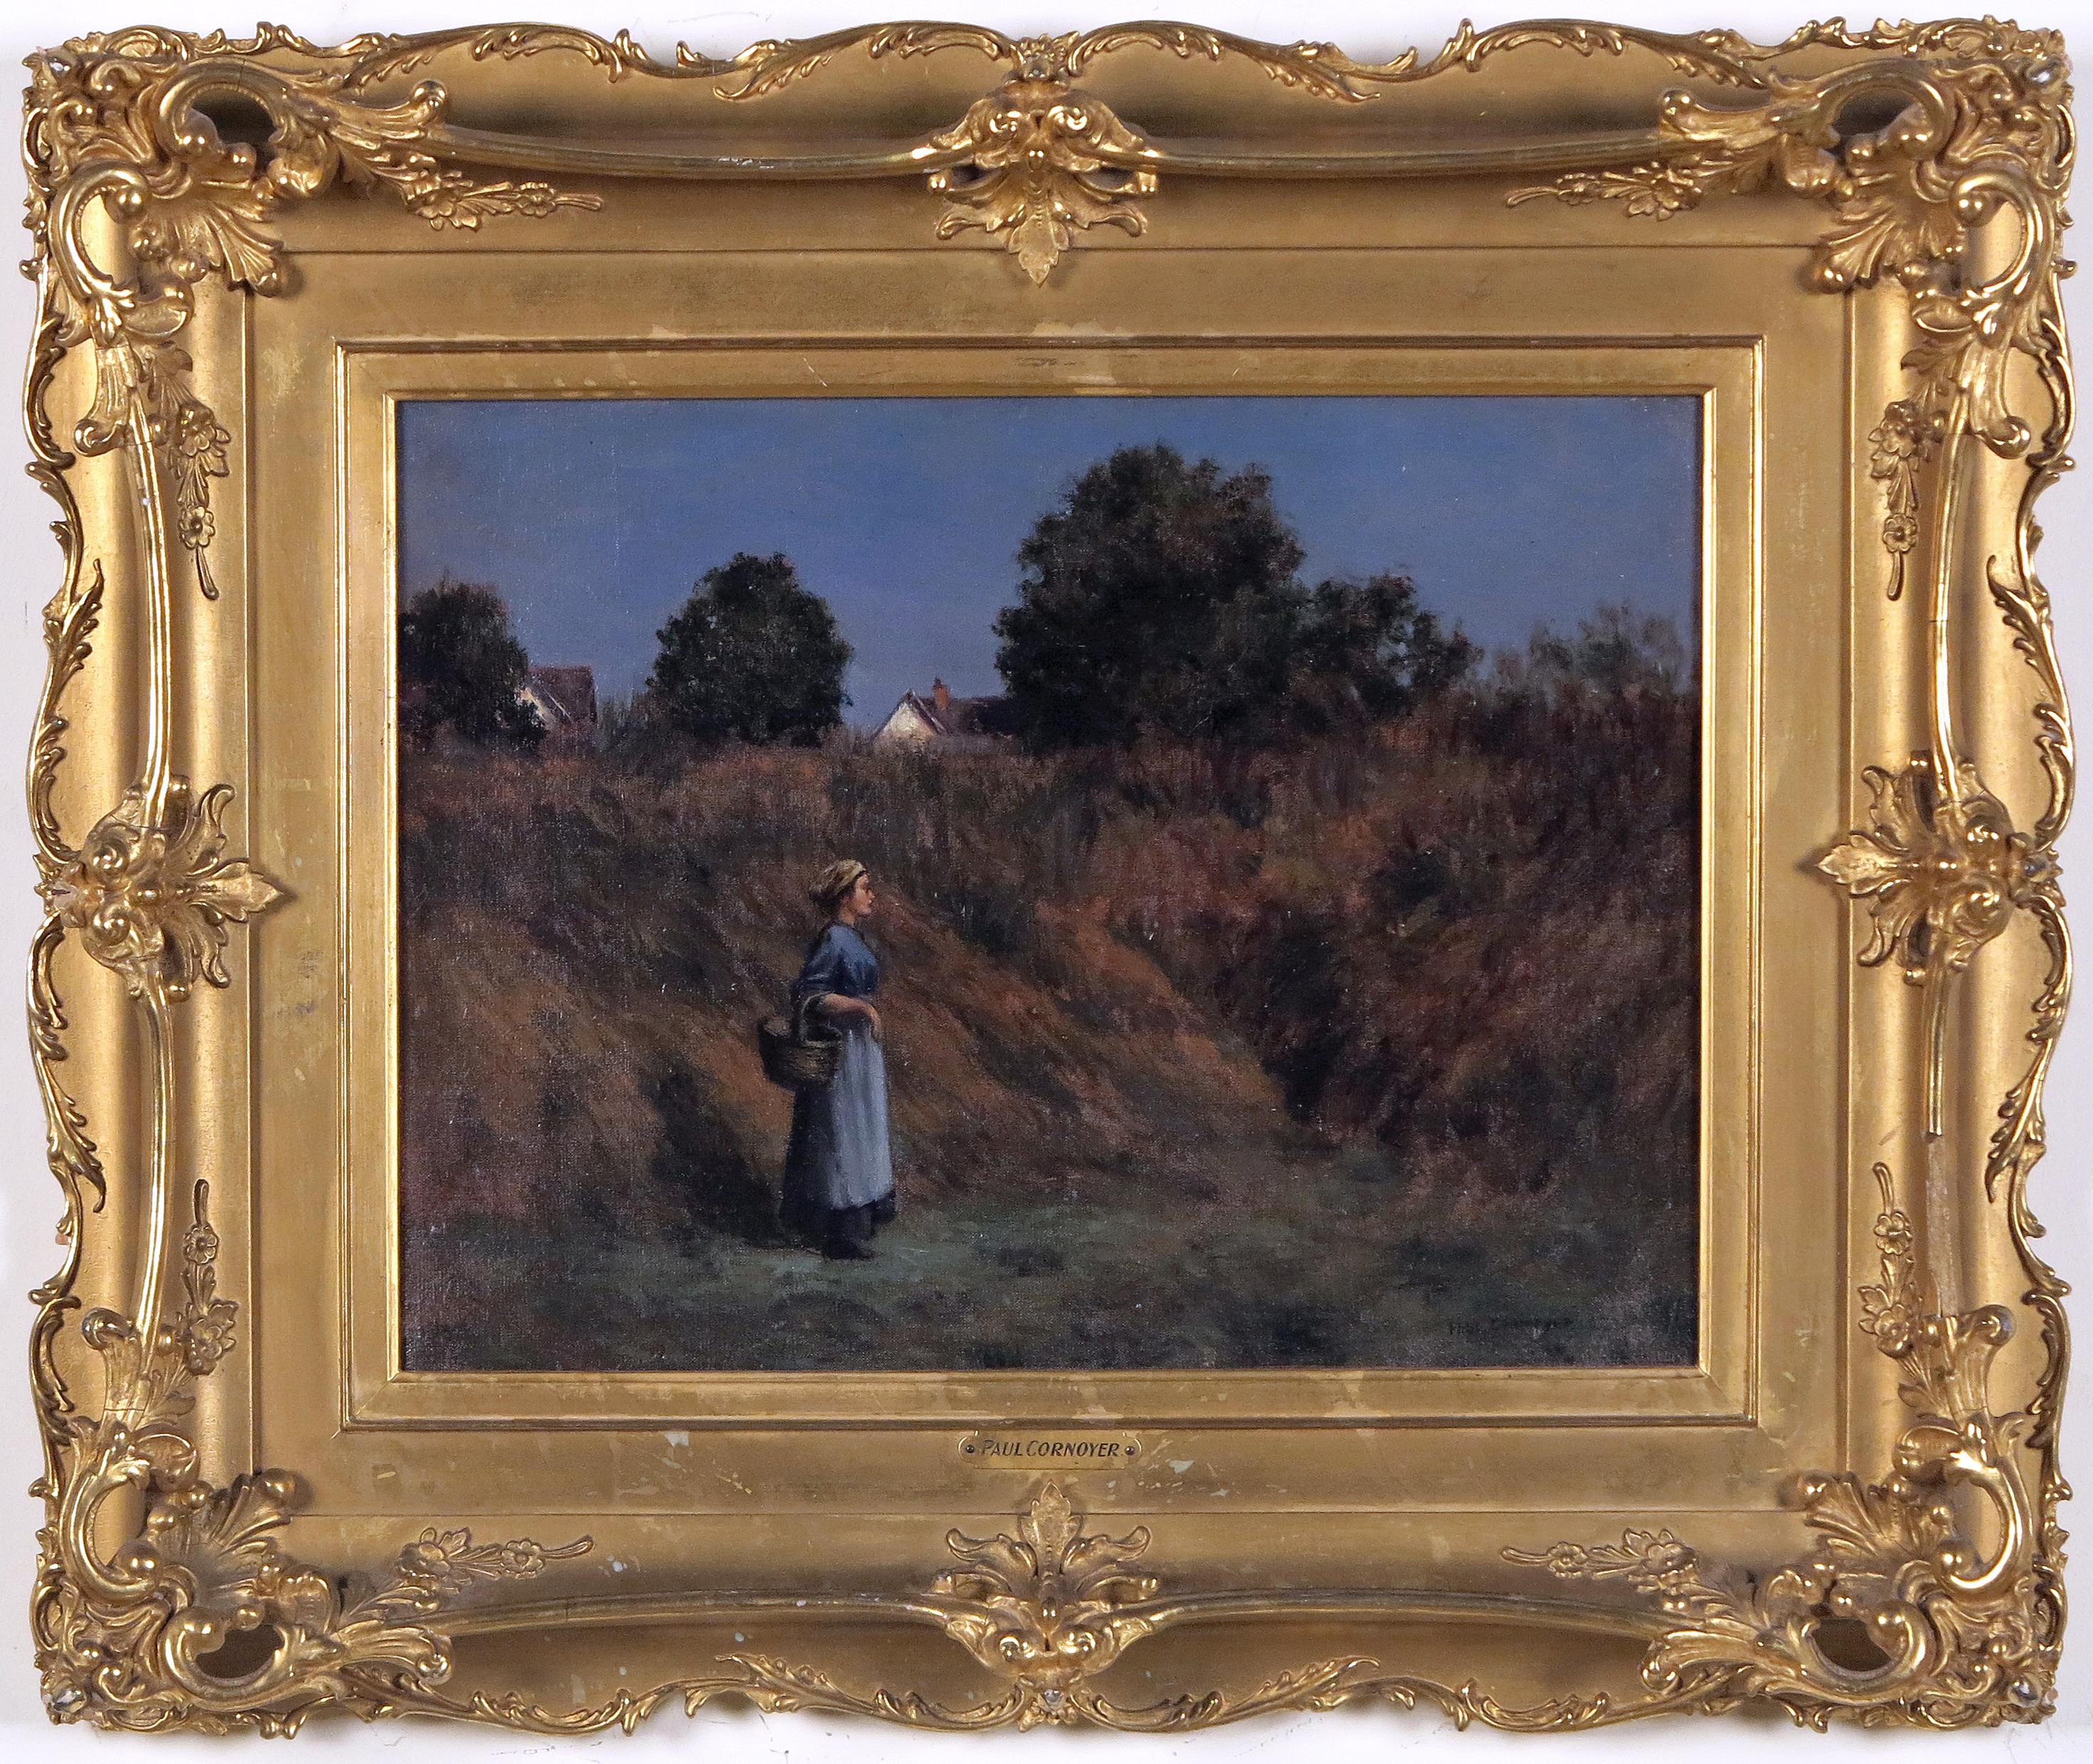 Women in a Field - Painting by Paul Cornoyer